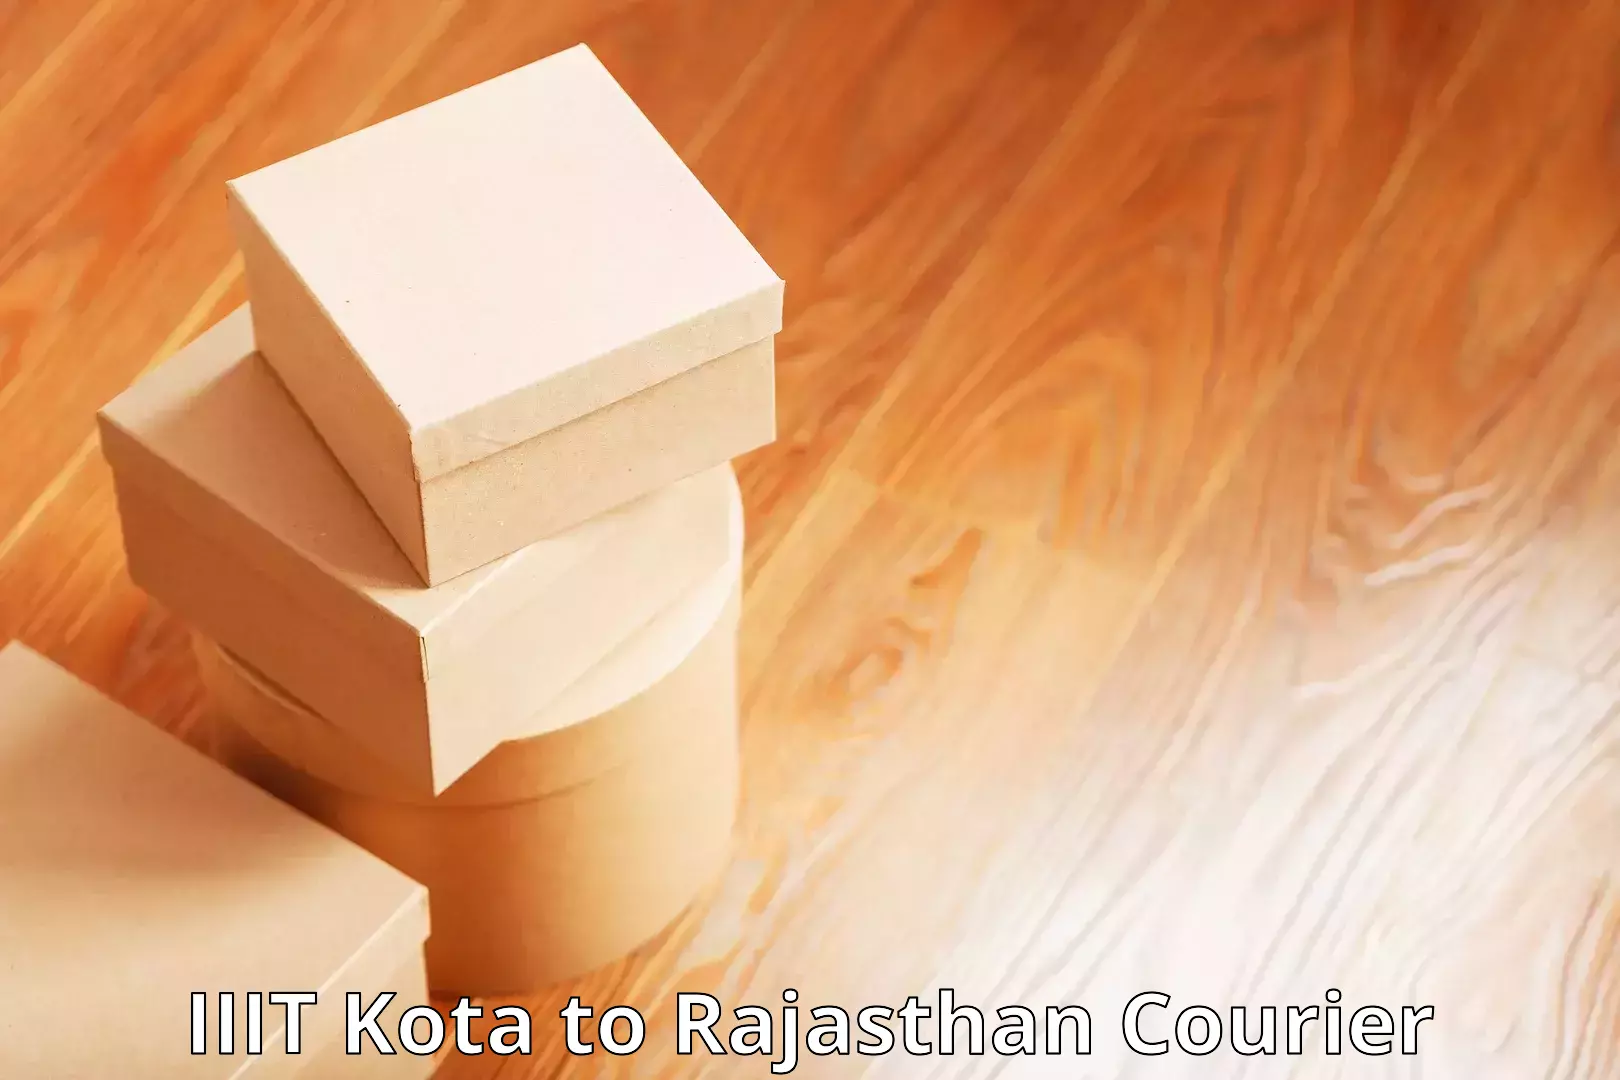 Premium courier solutions IIIT Kota to Reodar